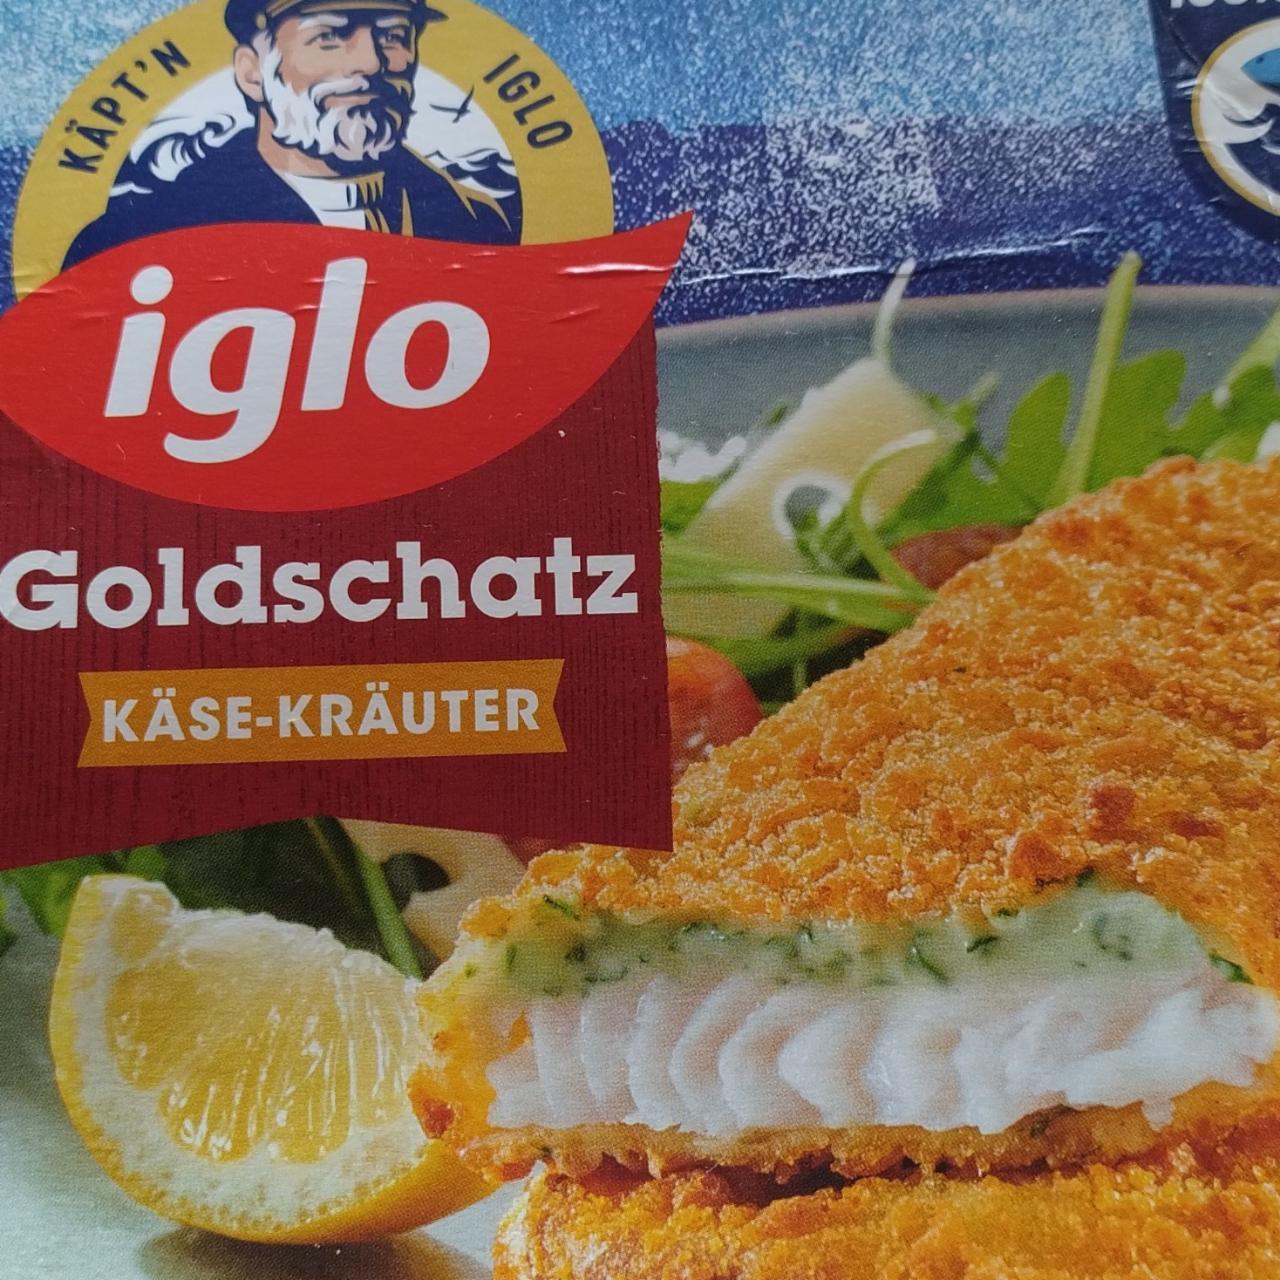 Fotografie - Goldschatz Käse-Kräuter Iglo